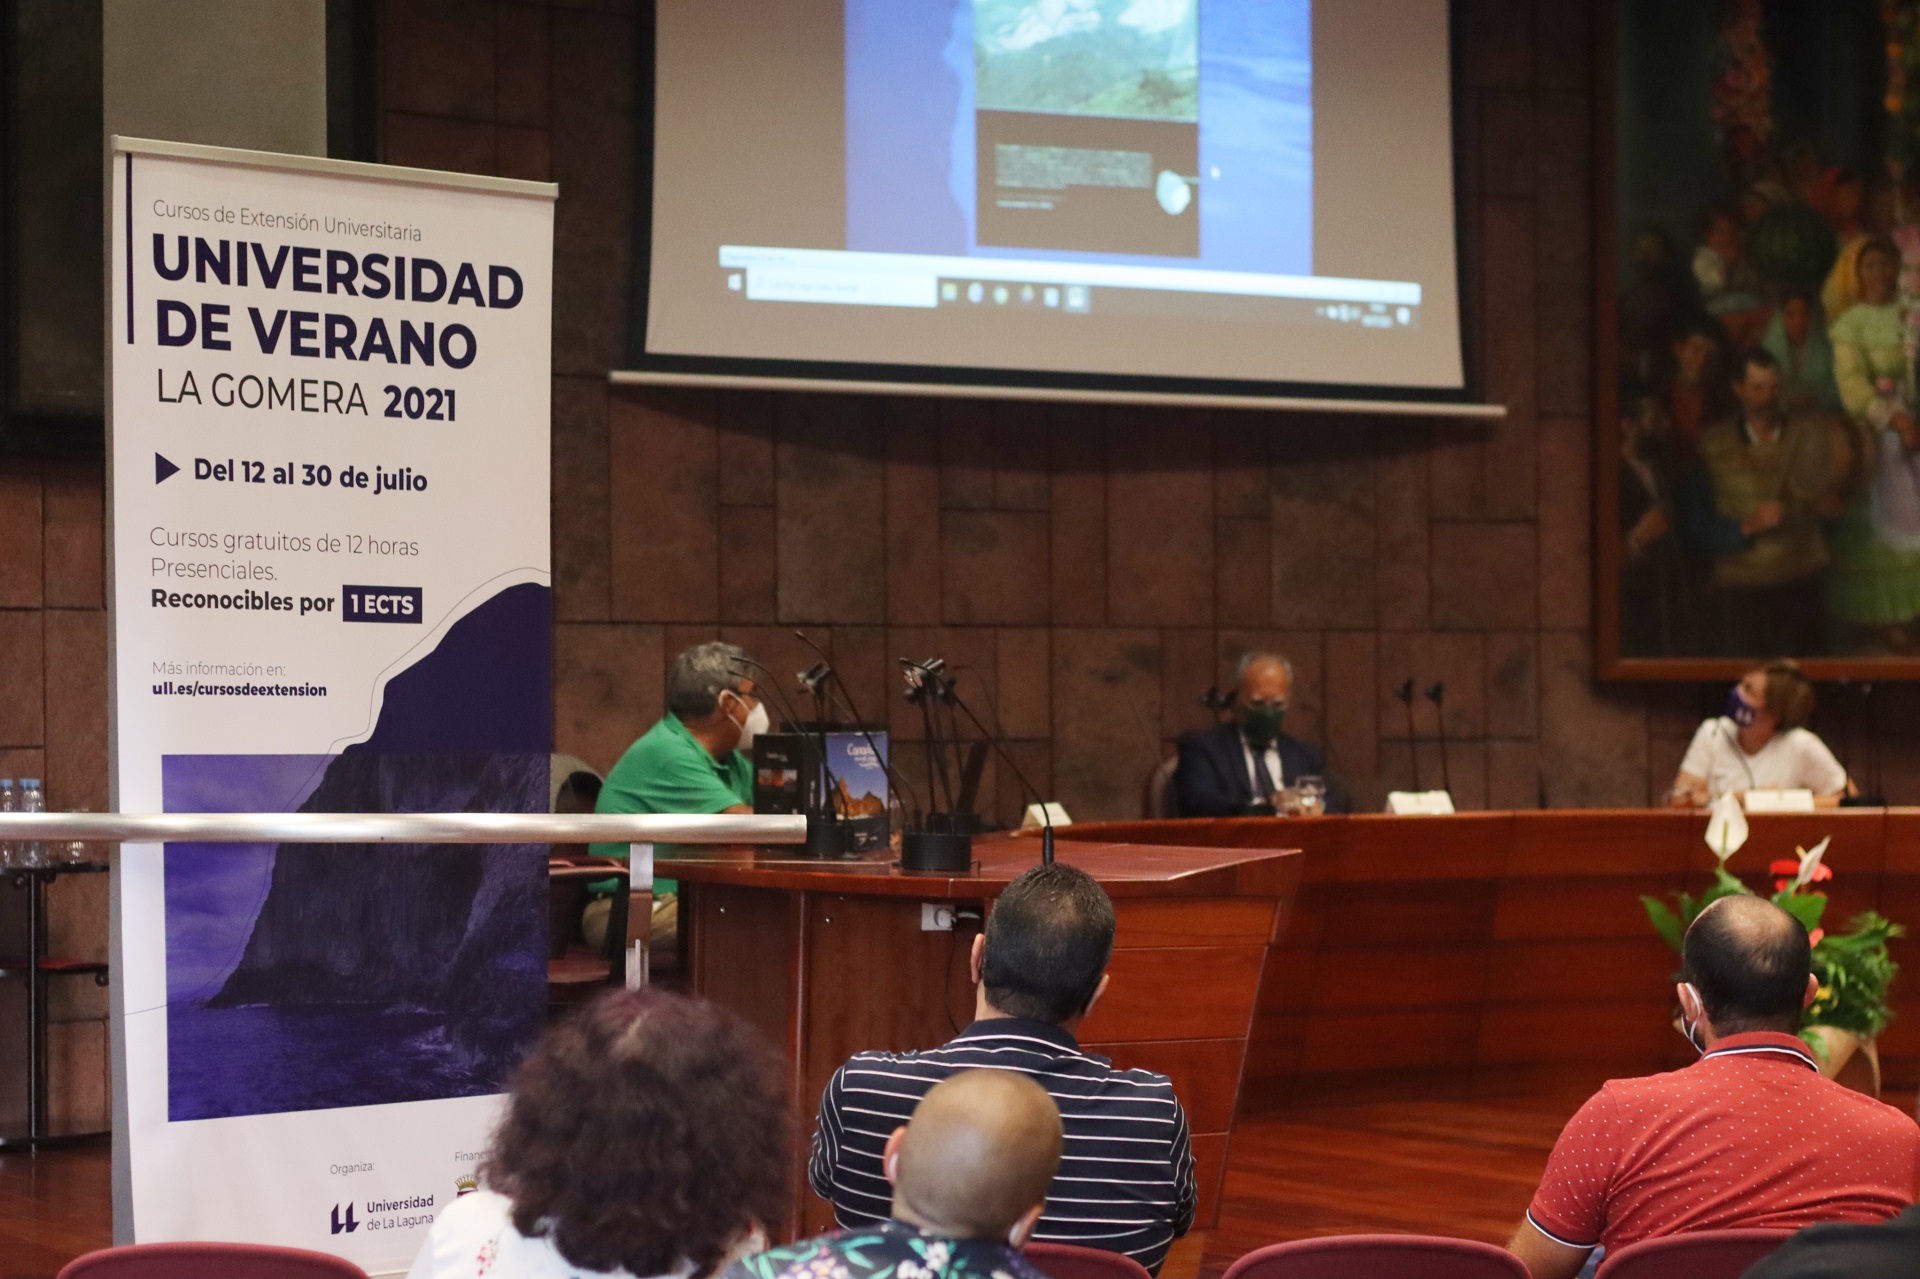 El acto de apertura de la Universidad de Verano de La Gomera se llenó de personas interesadas en el programa. Foto: Raida Peig